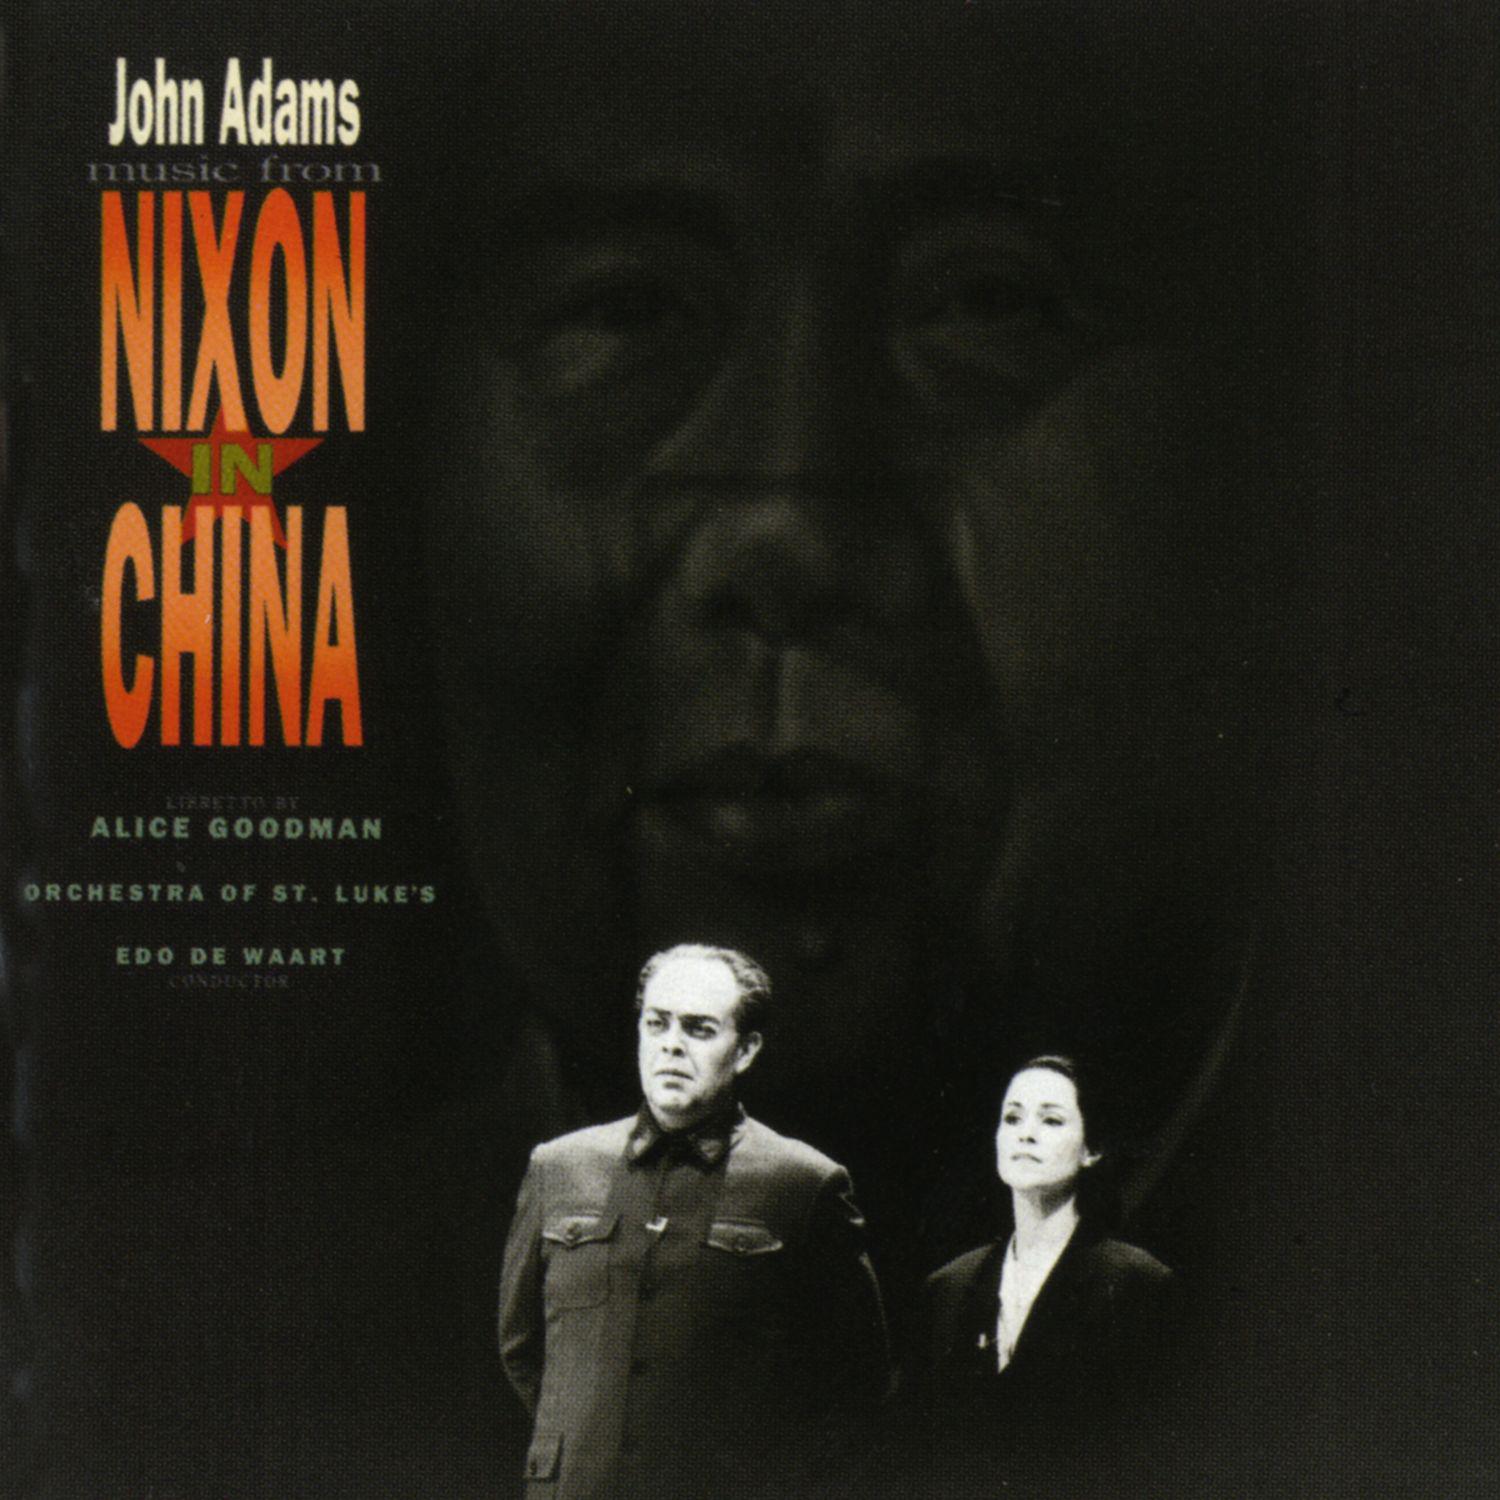 Nixon in China, Act I, Scene 1:Beginning